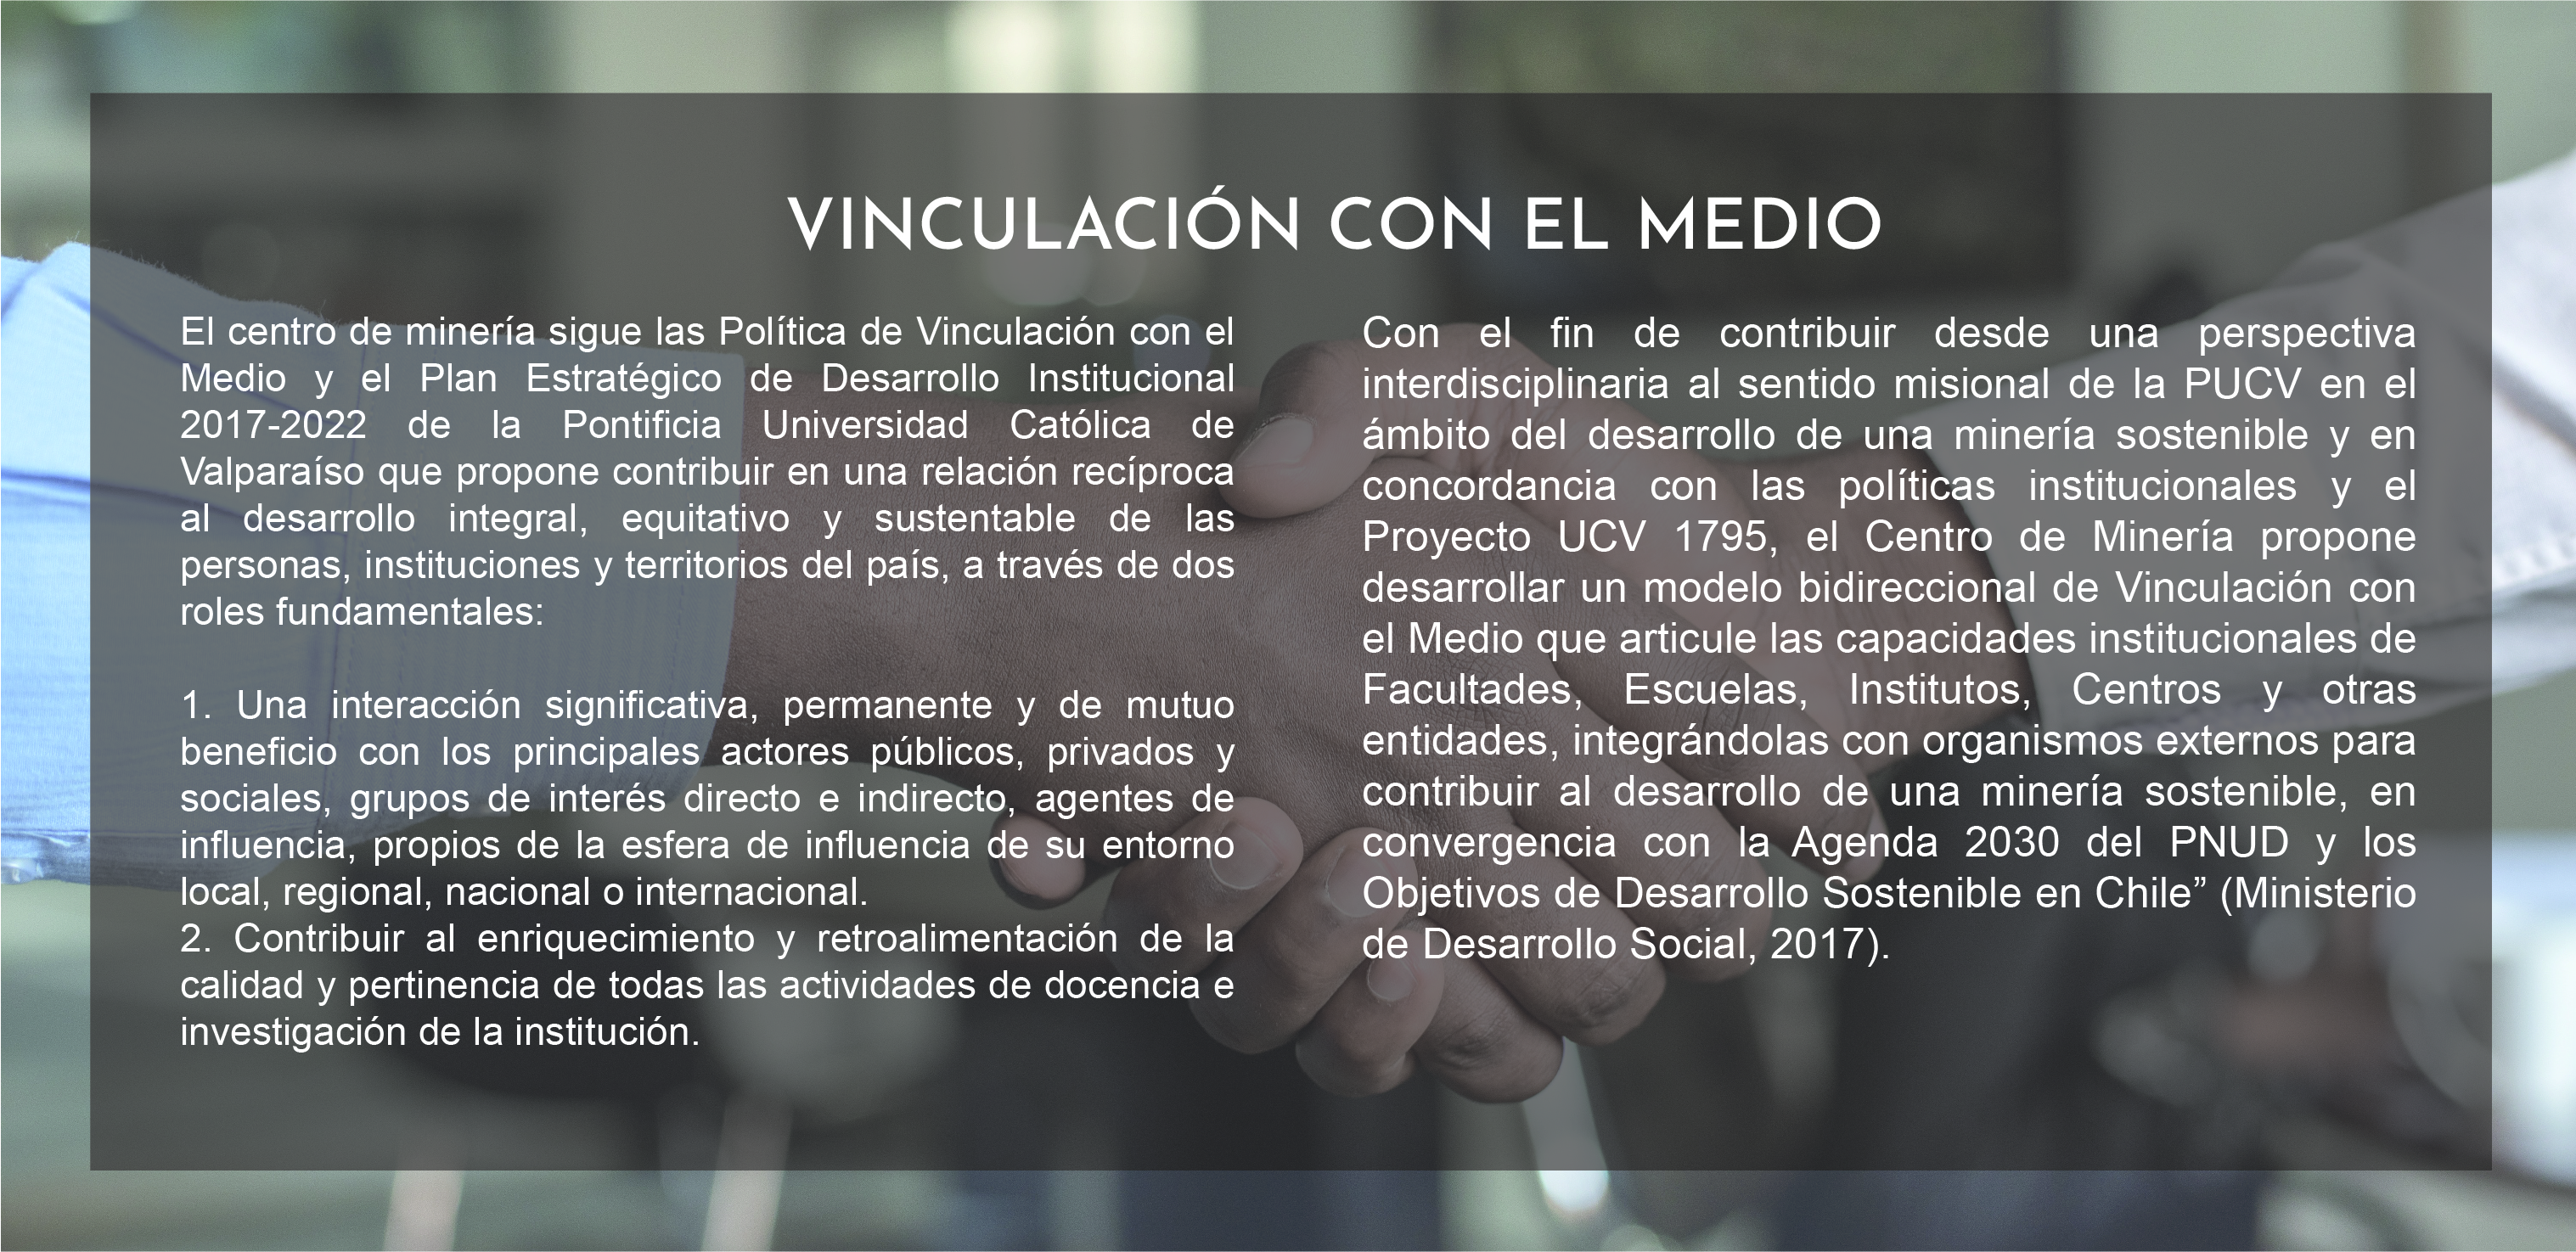 VINCULACIÓN CON EL MEDIO TEXTO